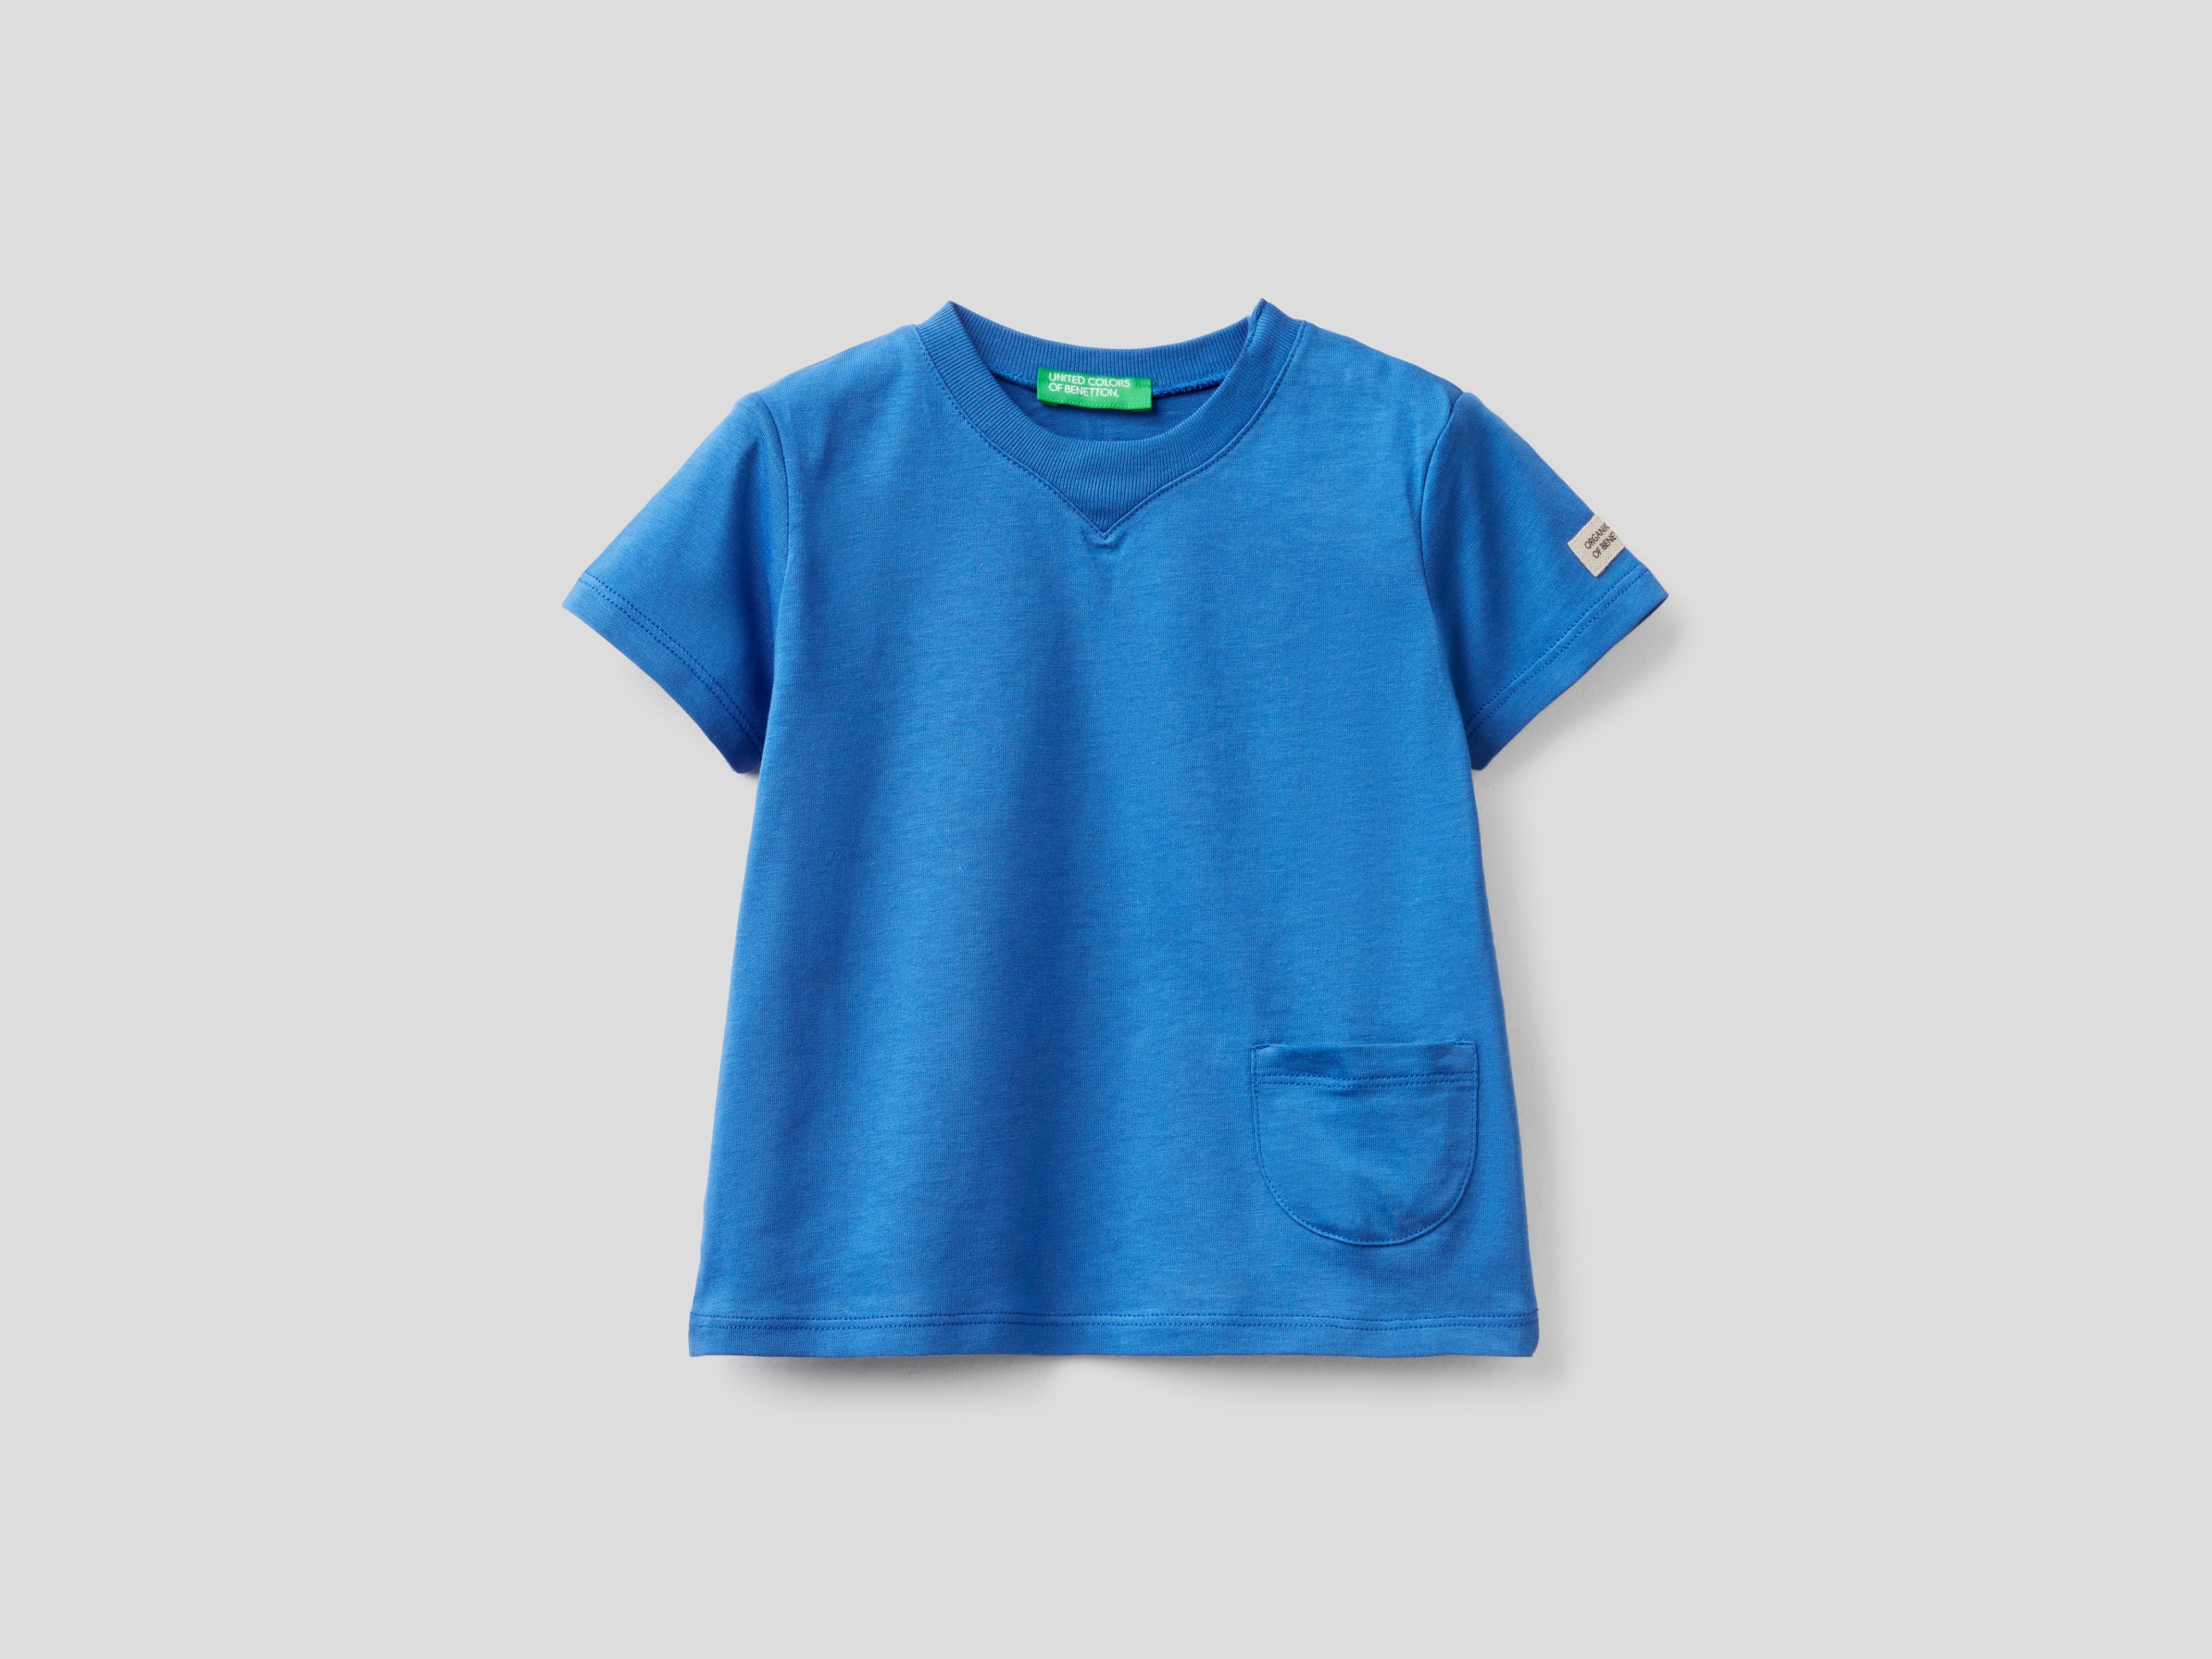 

детские голубые футболки Benetton для мальчиков 3i1xg100m.p 2-3г, Голубой